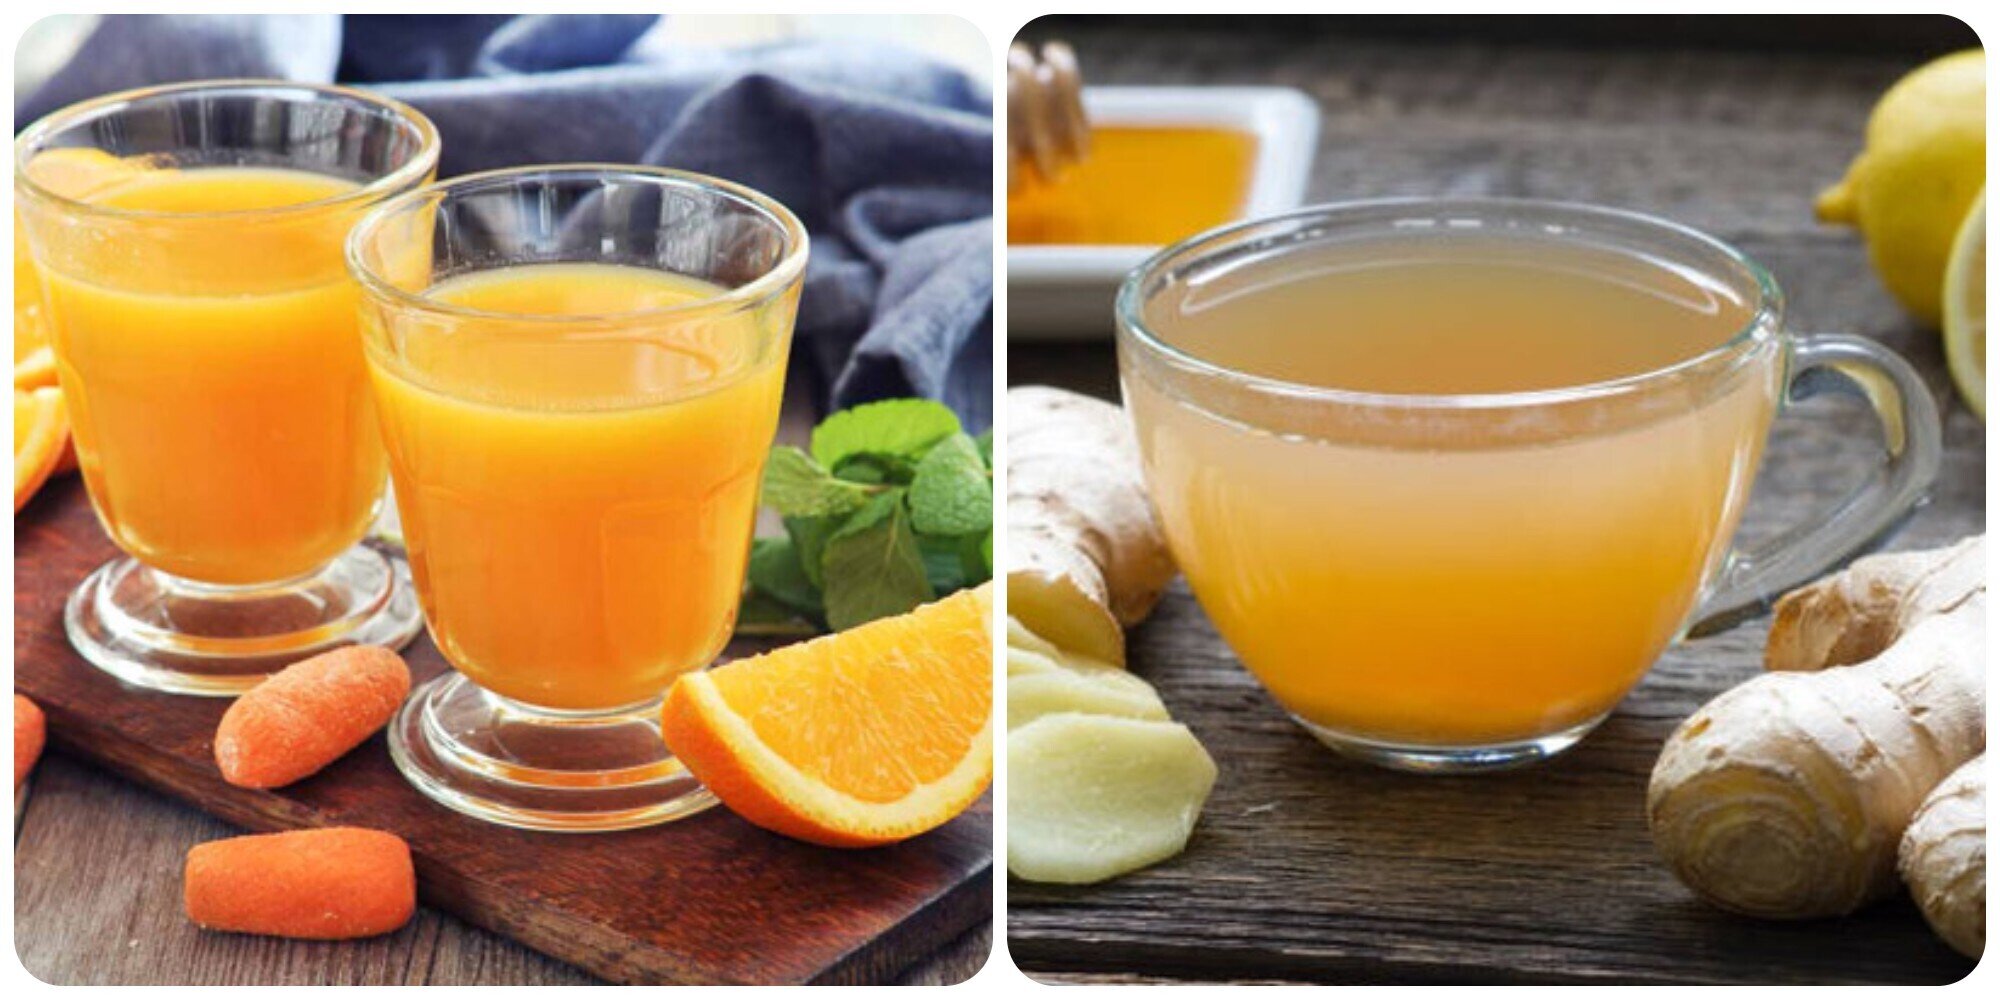 Nước gừng và nước cam đều được khuyến cáo không nên uống vào buổi tối